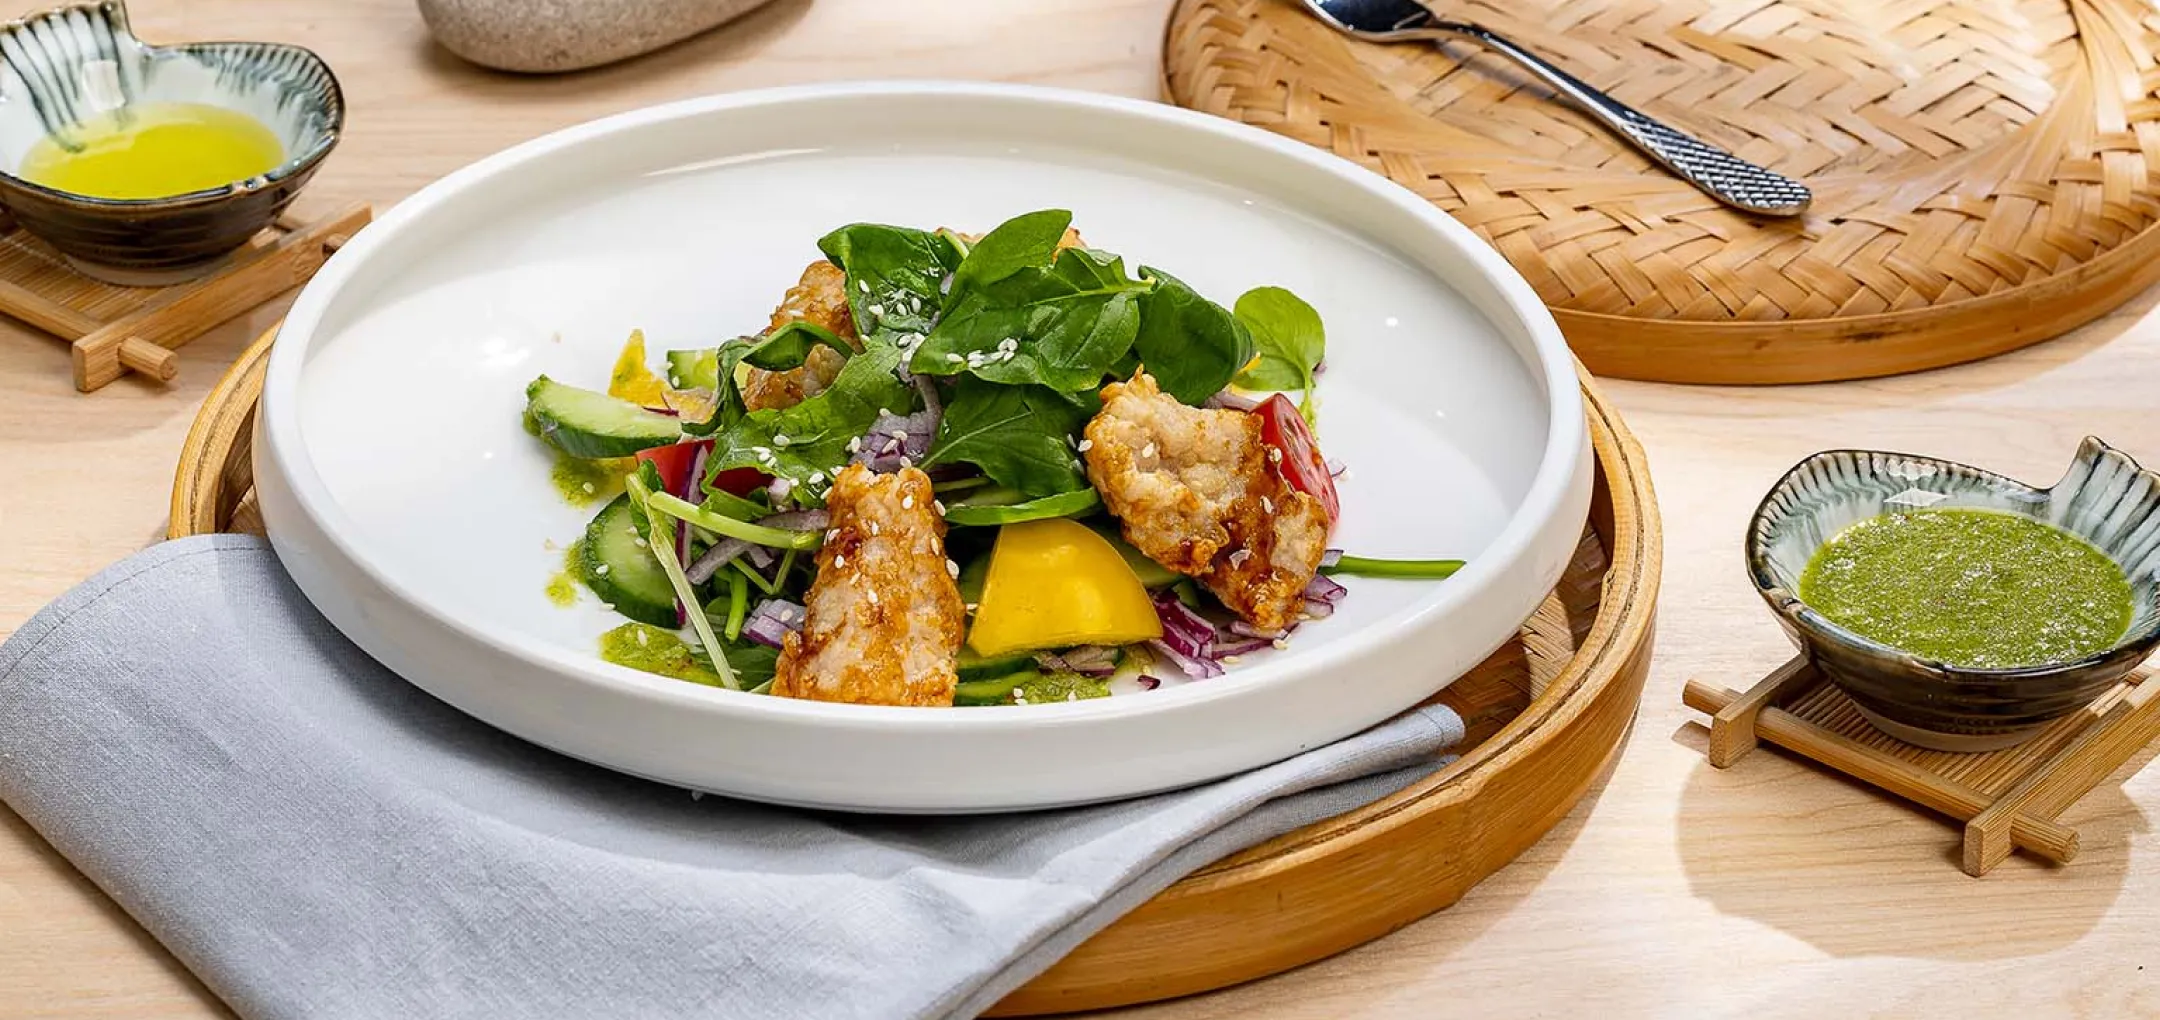 Салат в азиатском стиле с овощами и филе Дальневосточного Минтая в кляре